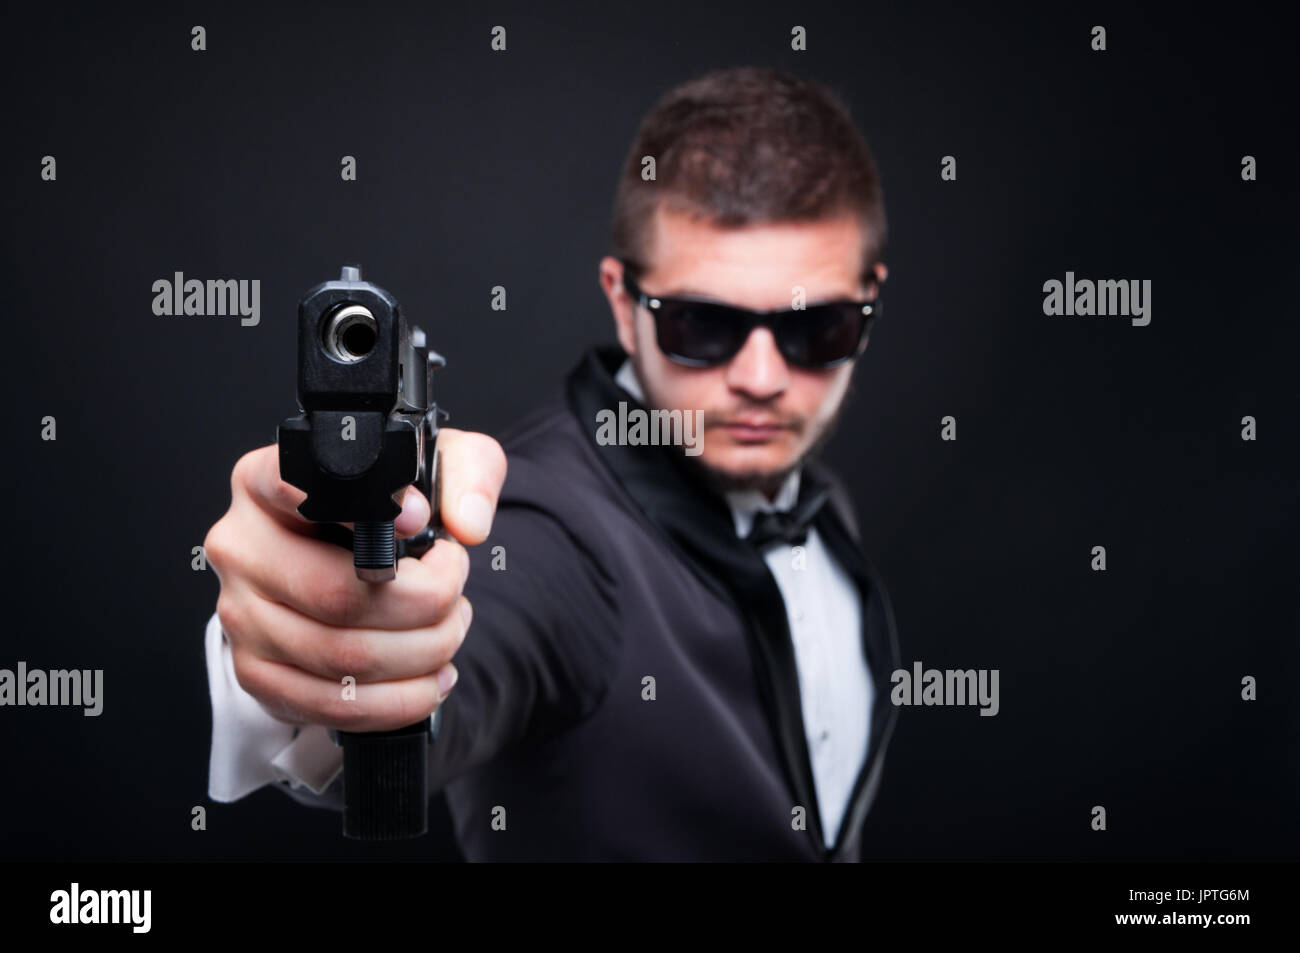 Apuesto asesino pistola apuntando a una meta invisible intentando intimidar sobre fondo oscuro Foto de stock